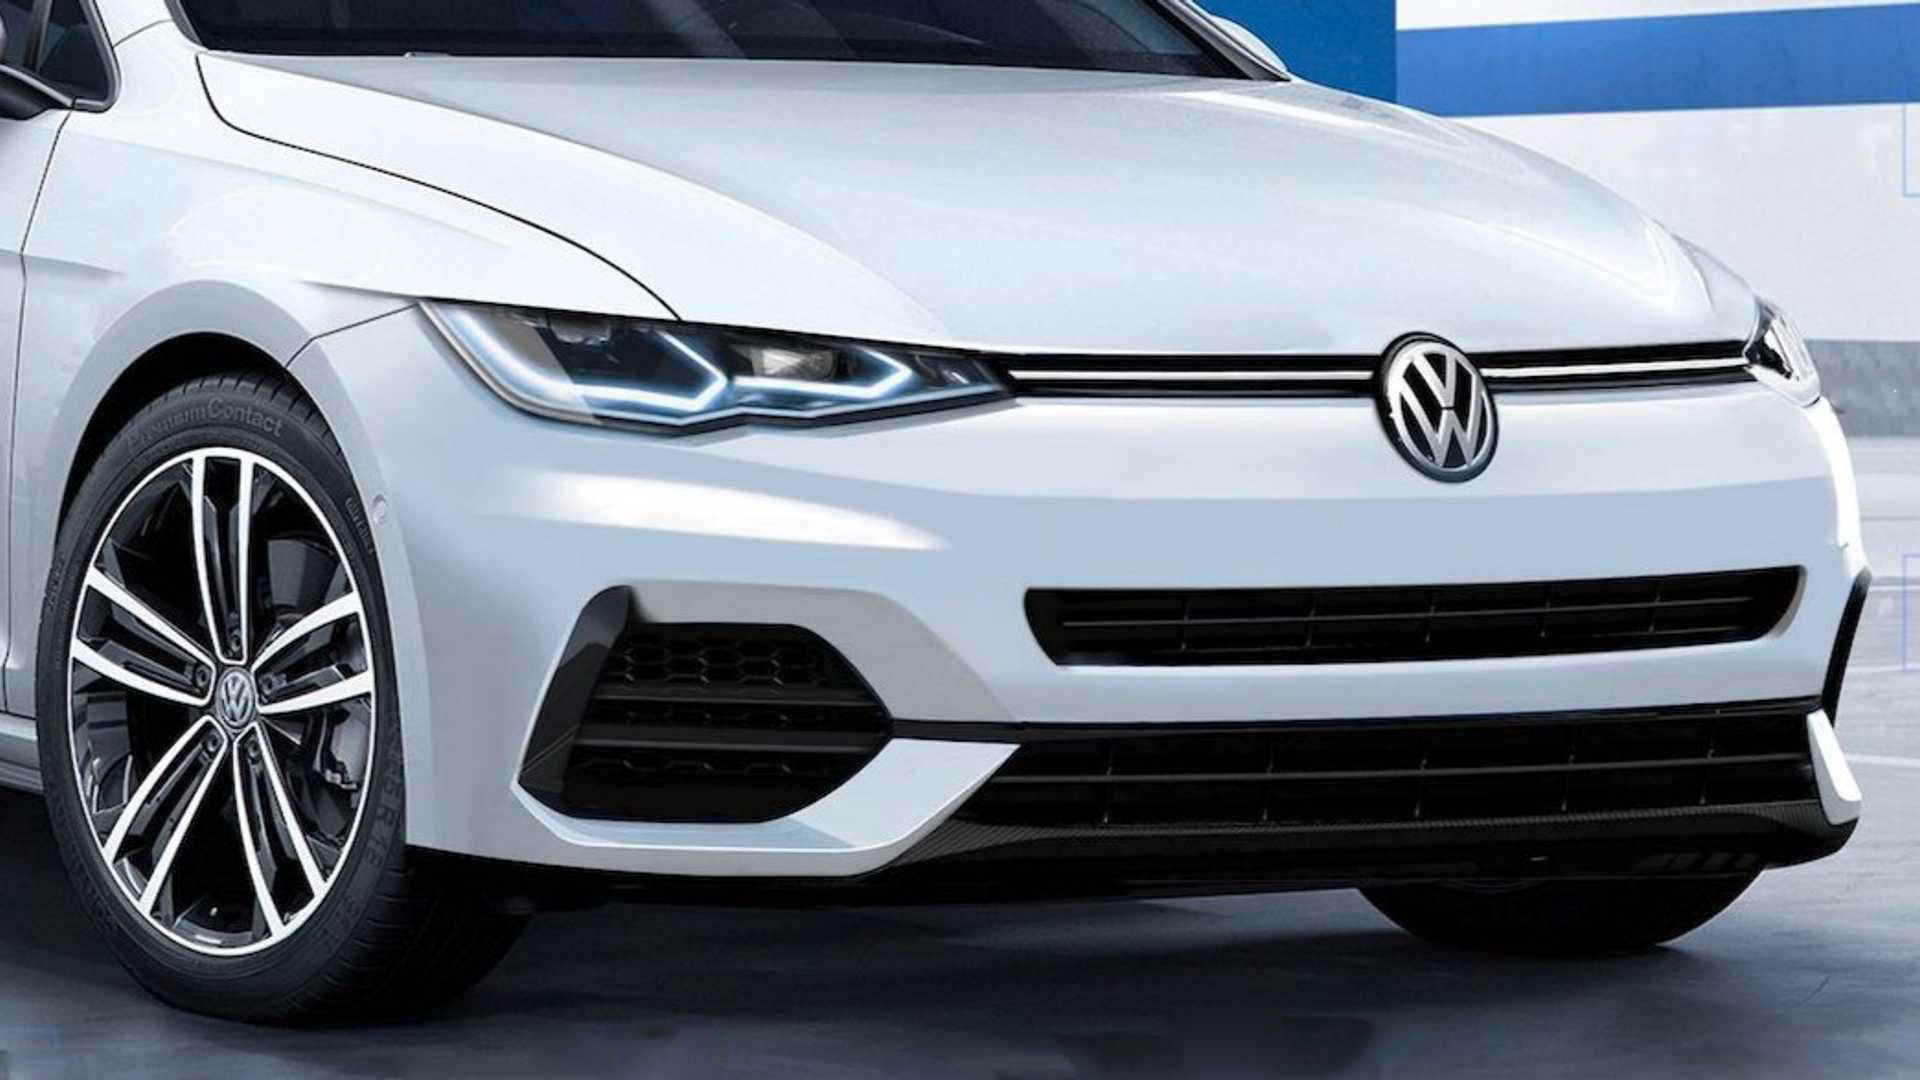 Volkswagen’in göz bebeği aracı